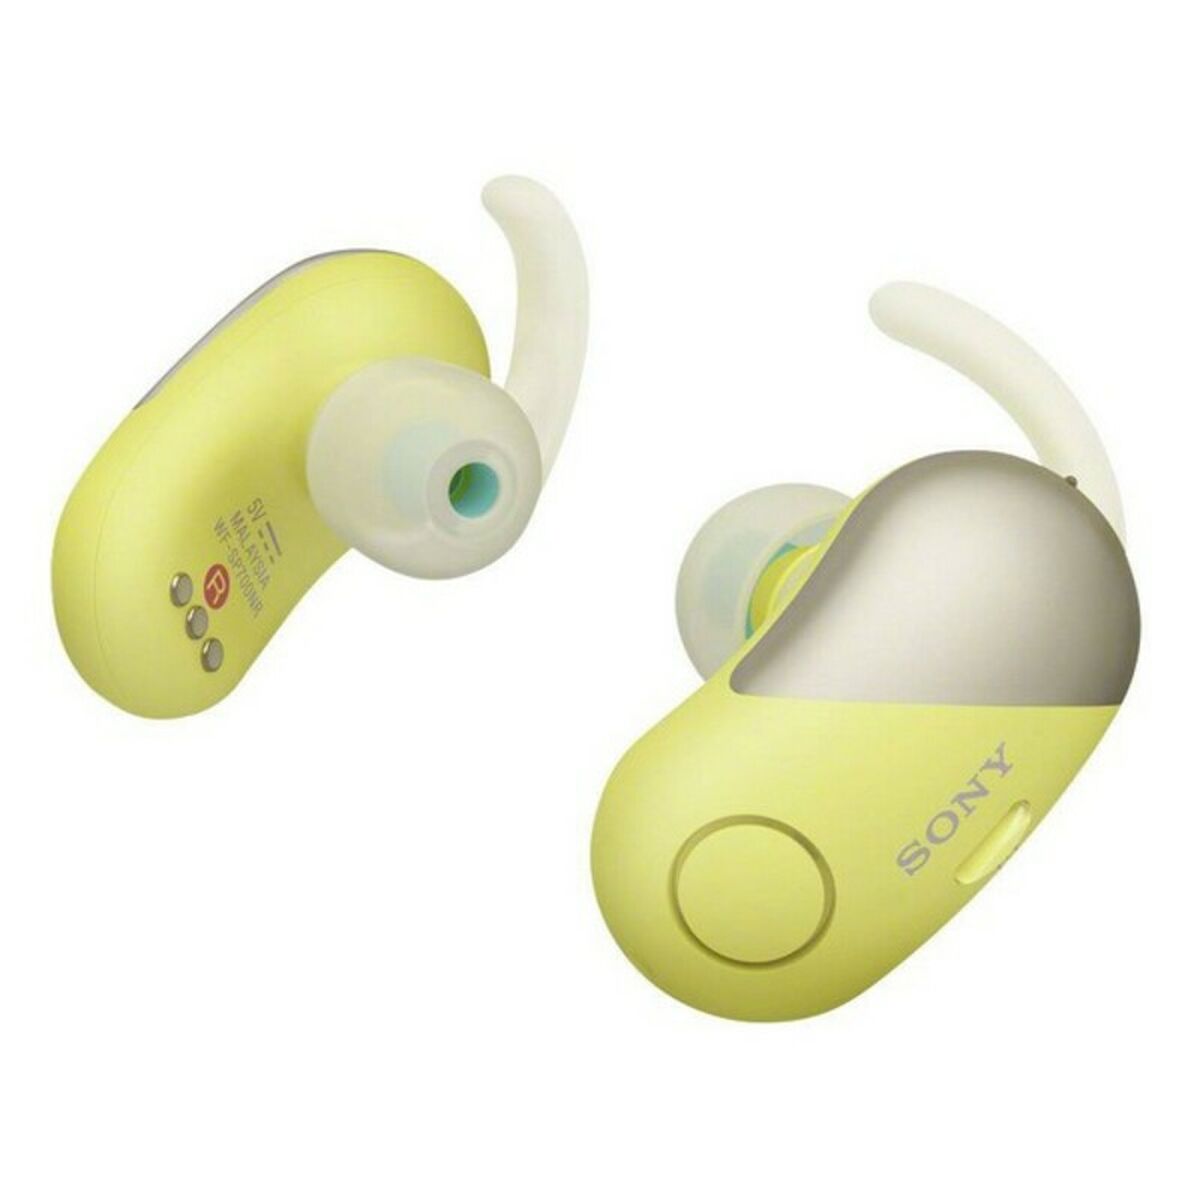 Auricolari in Ear Bluetooth Sony WFSP700N TWS